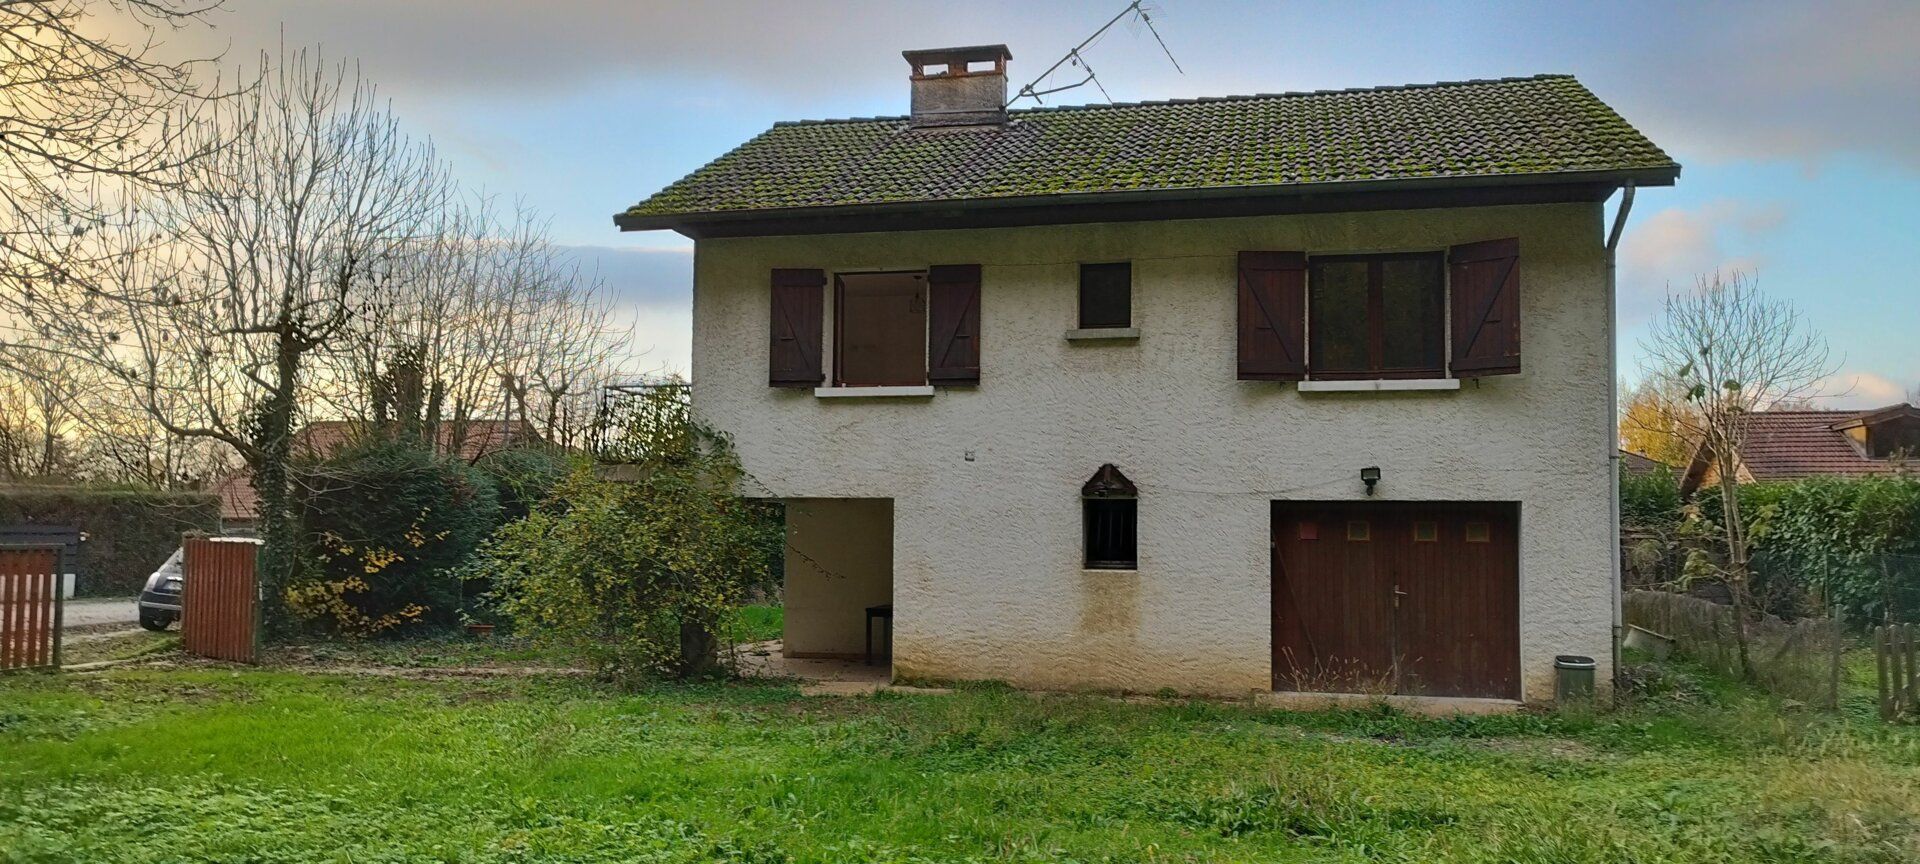 Maison à vendre 4 90m2 à Saint-Quentin-sur-Isère vignette-8